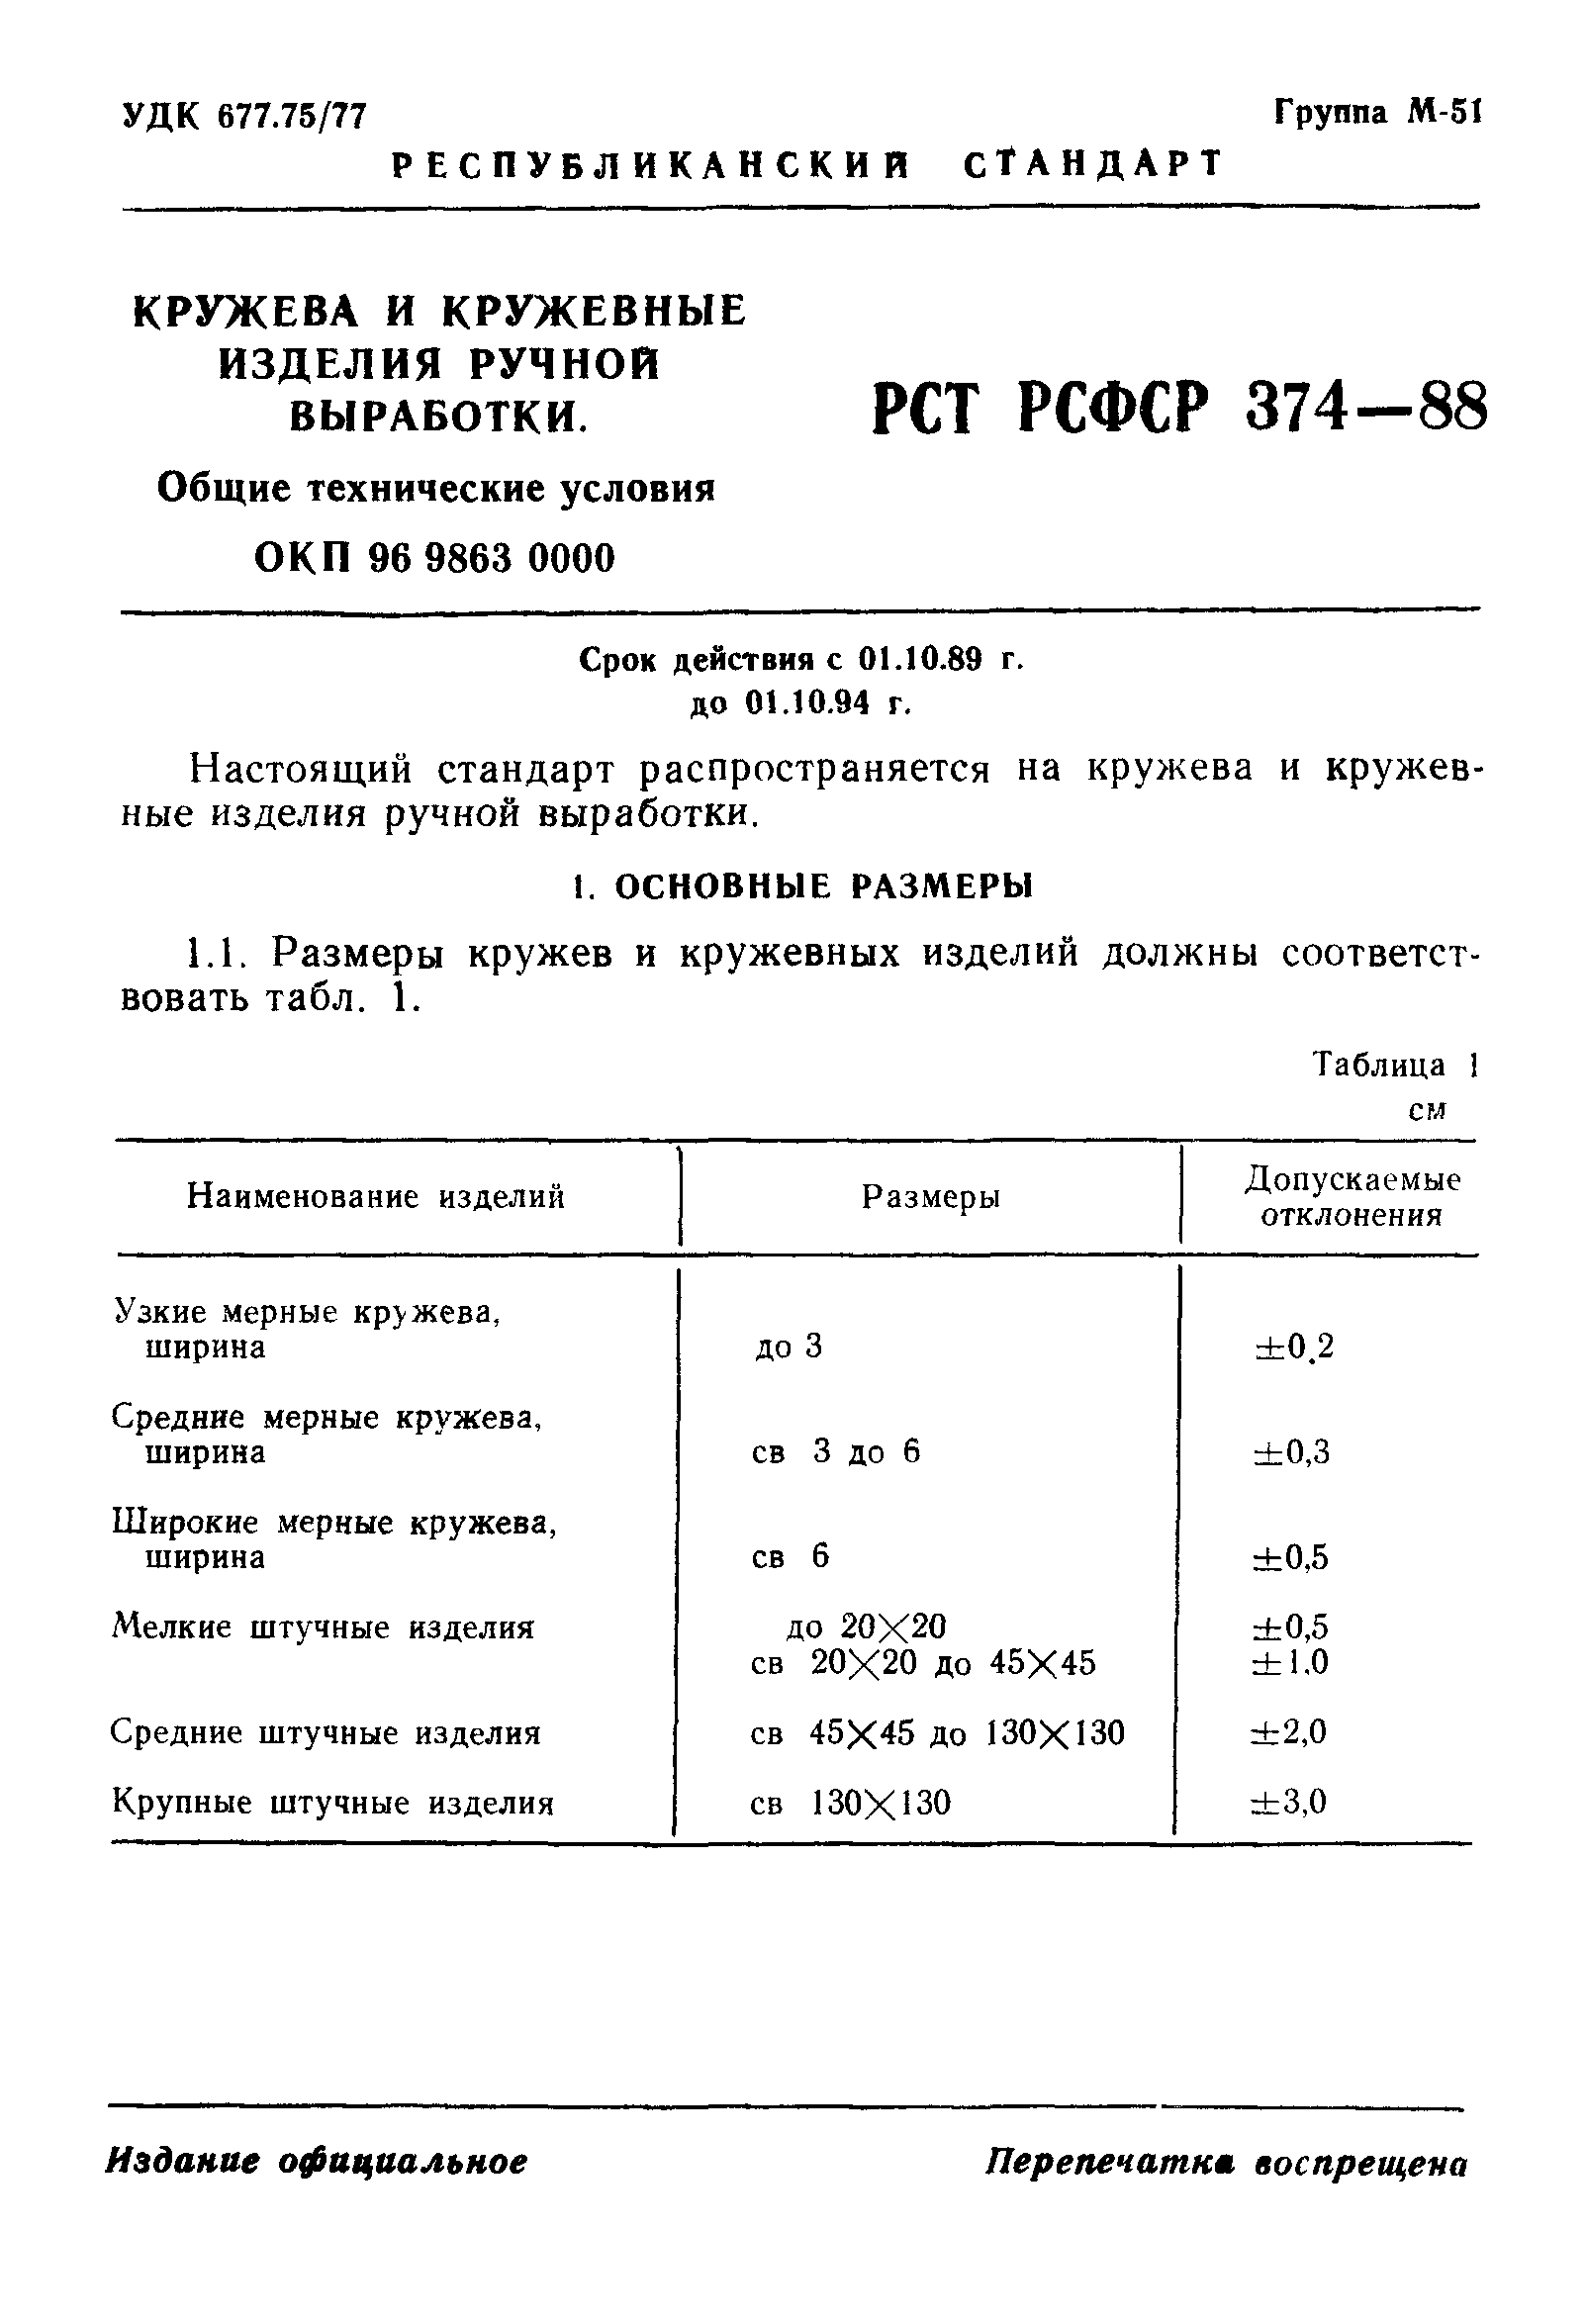 РСТ РСФСР 374-88